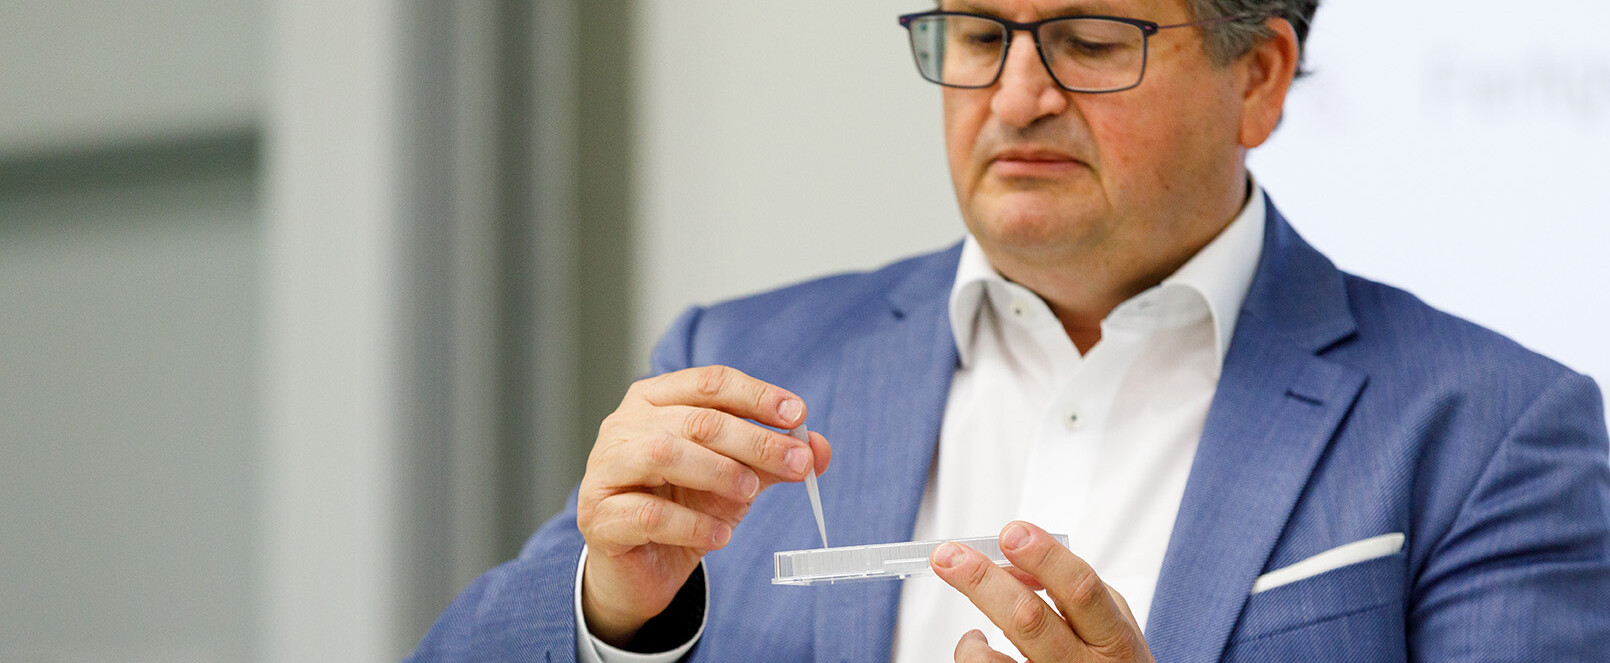 Anerkennungspreis: Frank Ehrig demonstriert wie Pipettenspitzen in der Medizintechnik eingesetzt werden.